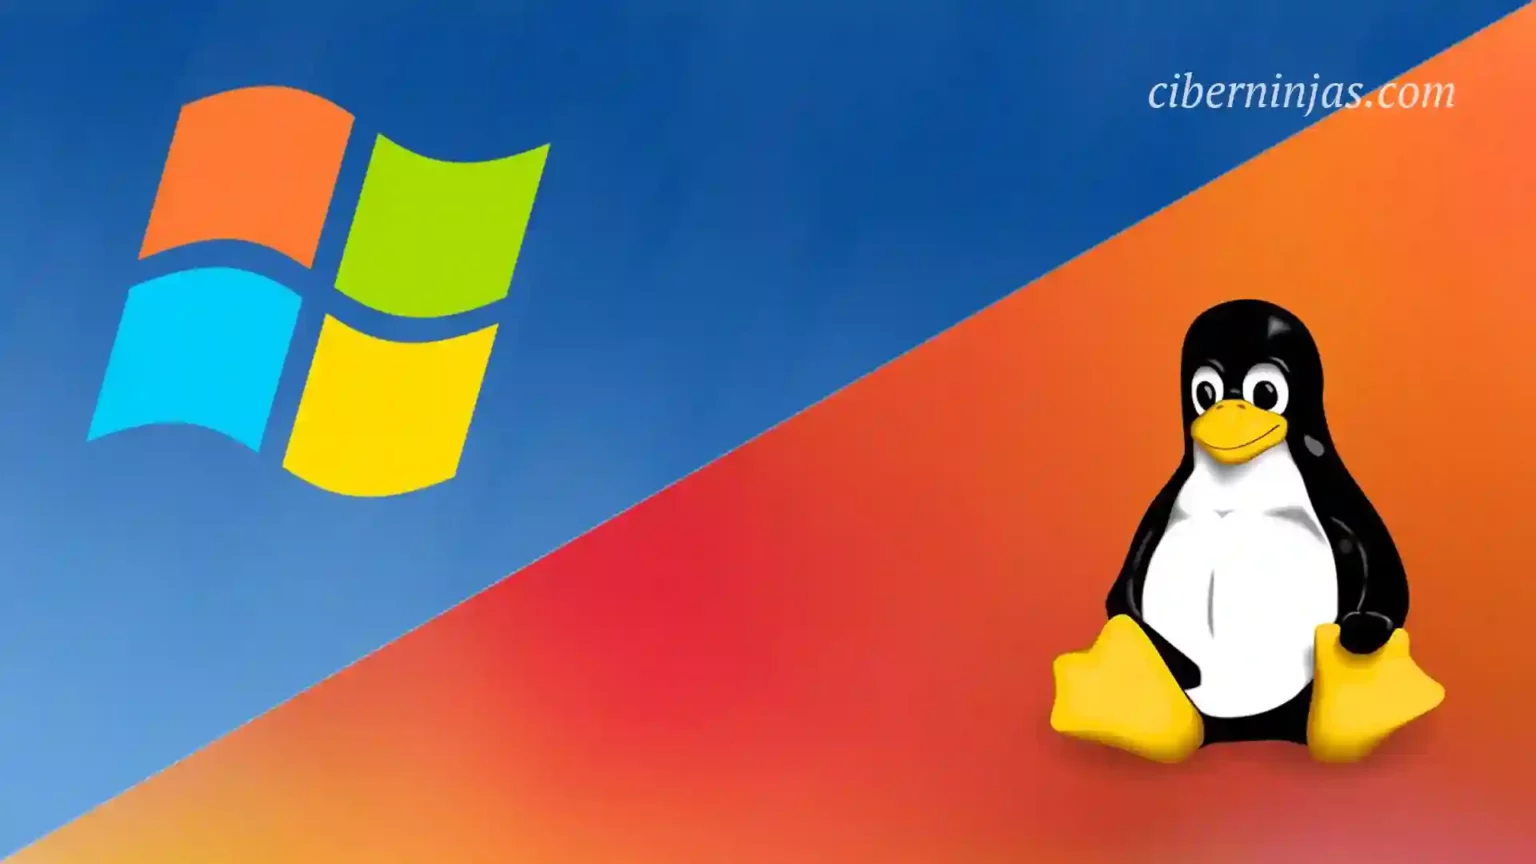 ¿Qué sistema operativo deberían usar los desarrolladores? Linux o Windows